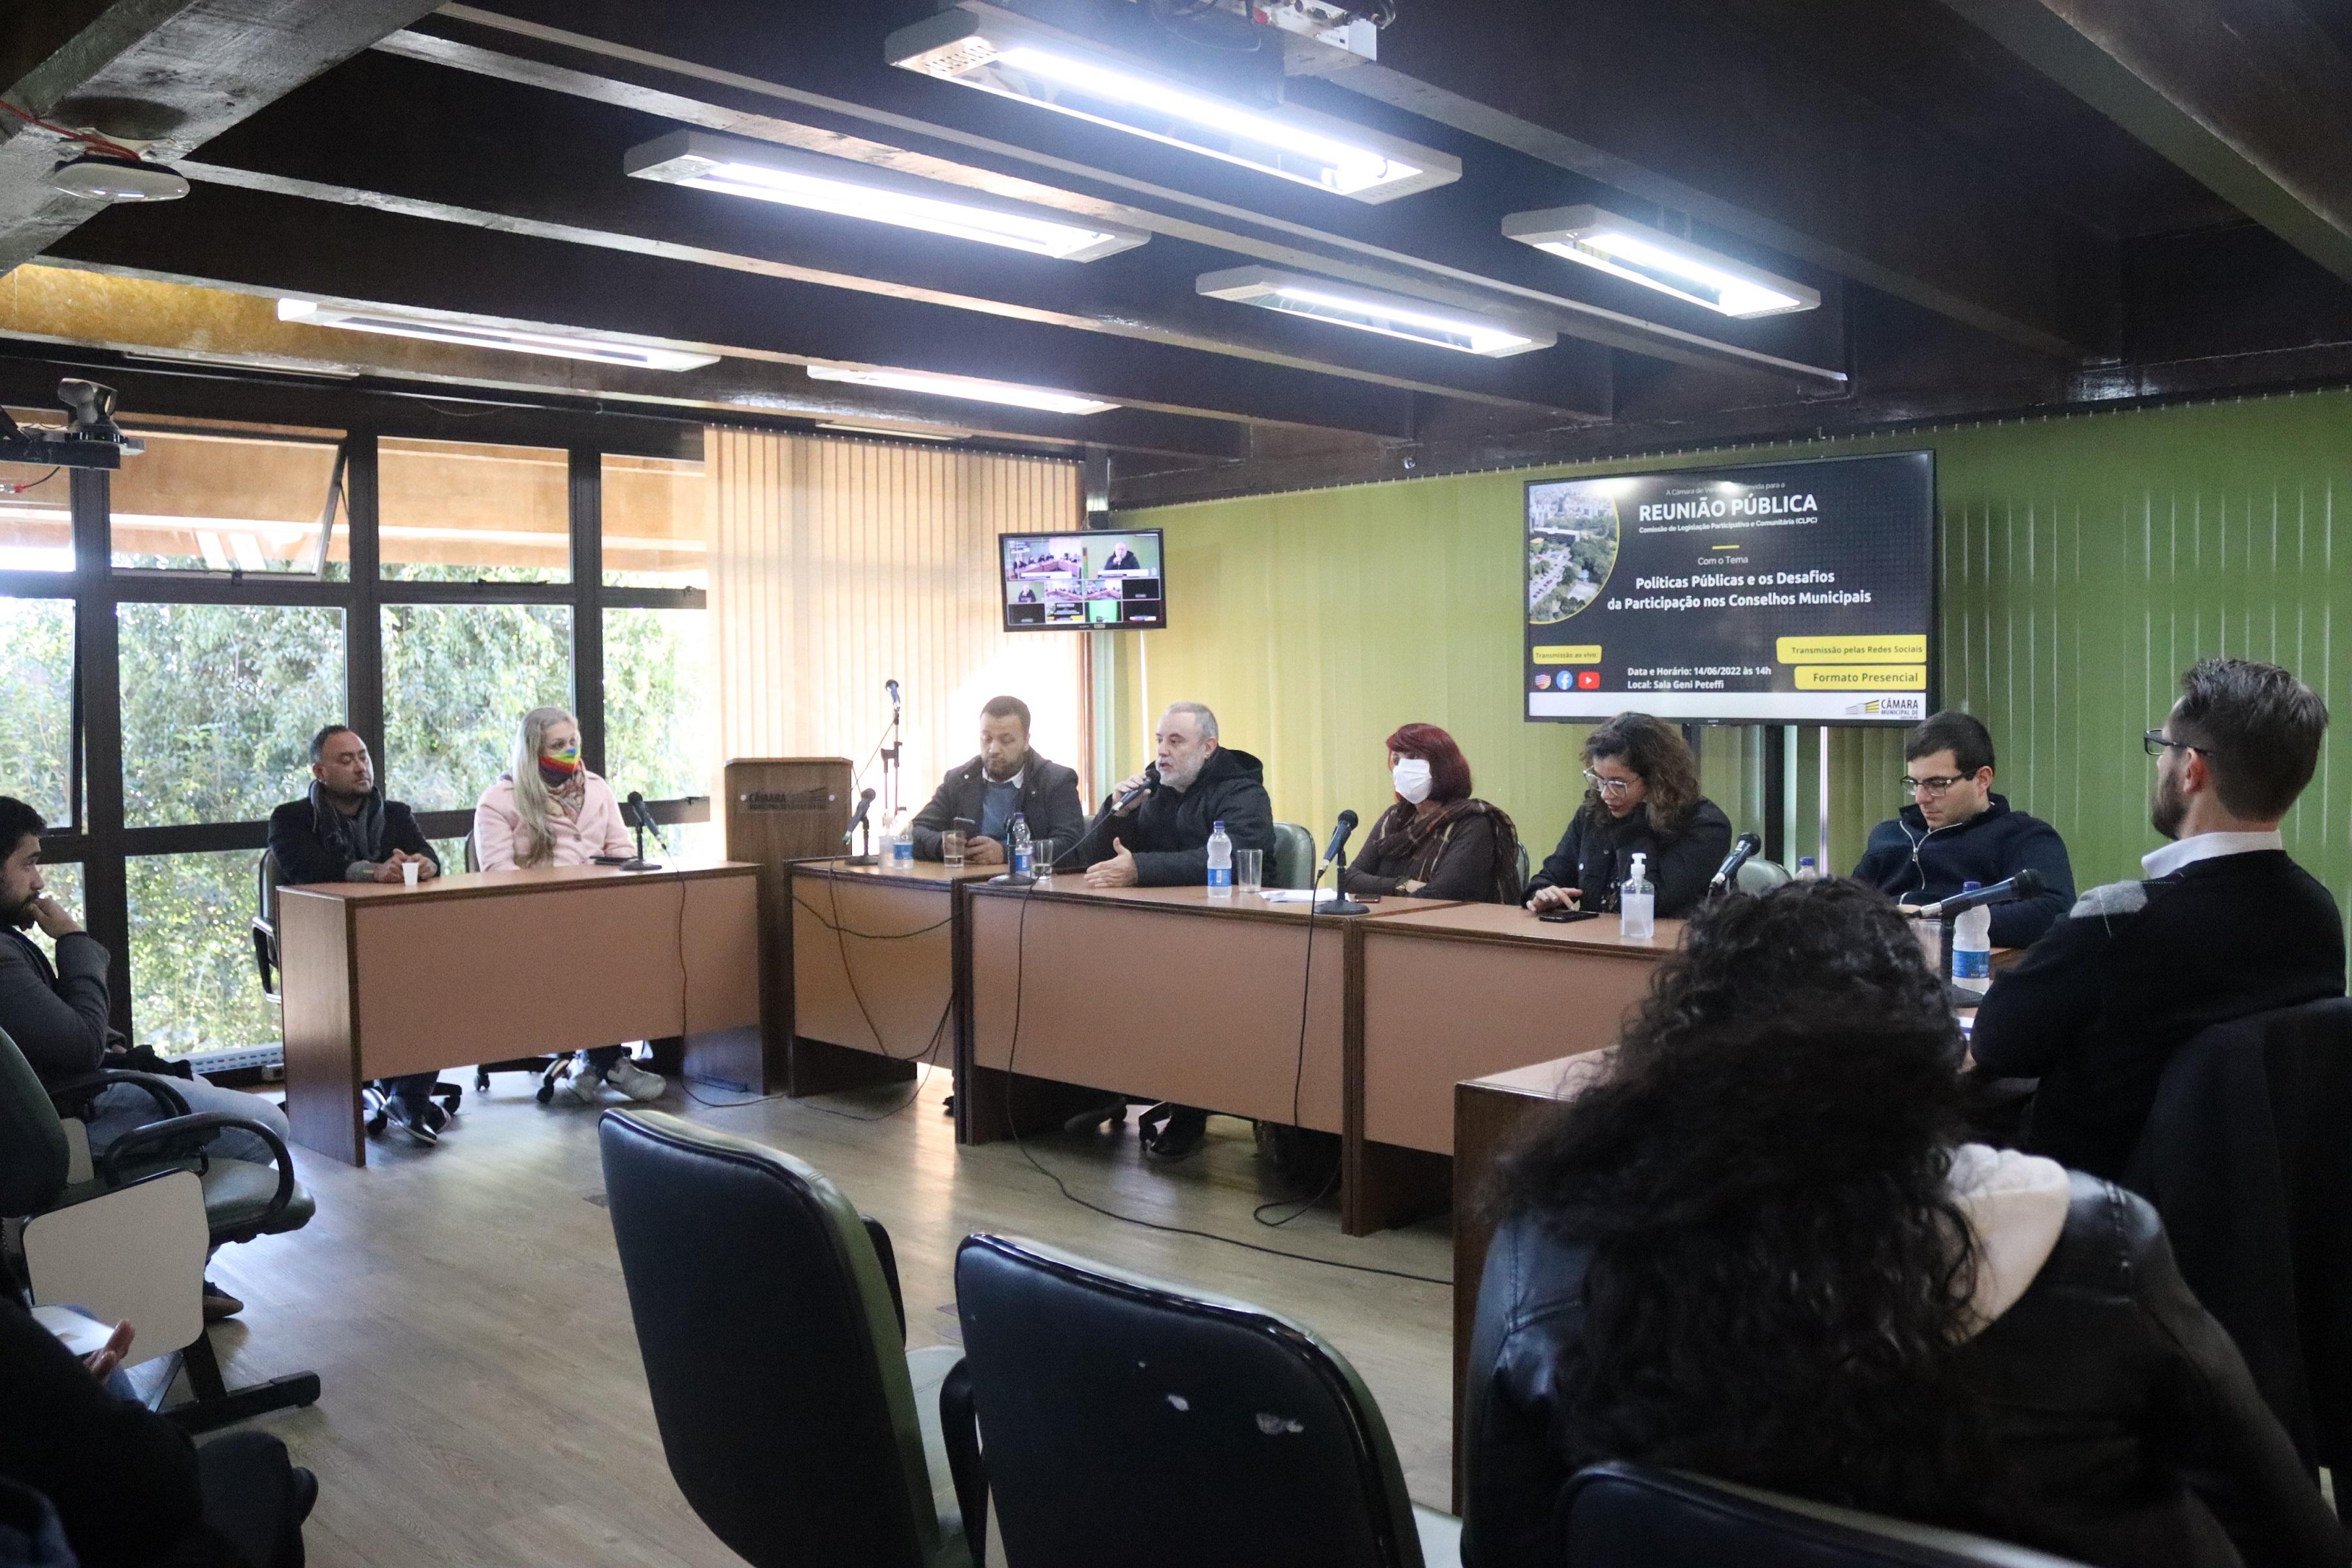 Participação social nos Conselhos Municipais é discutida em reunião pública no Legislativo